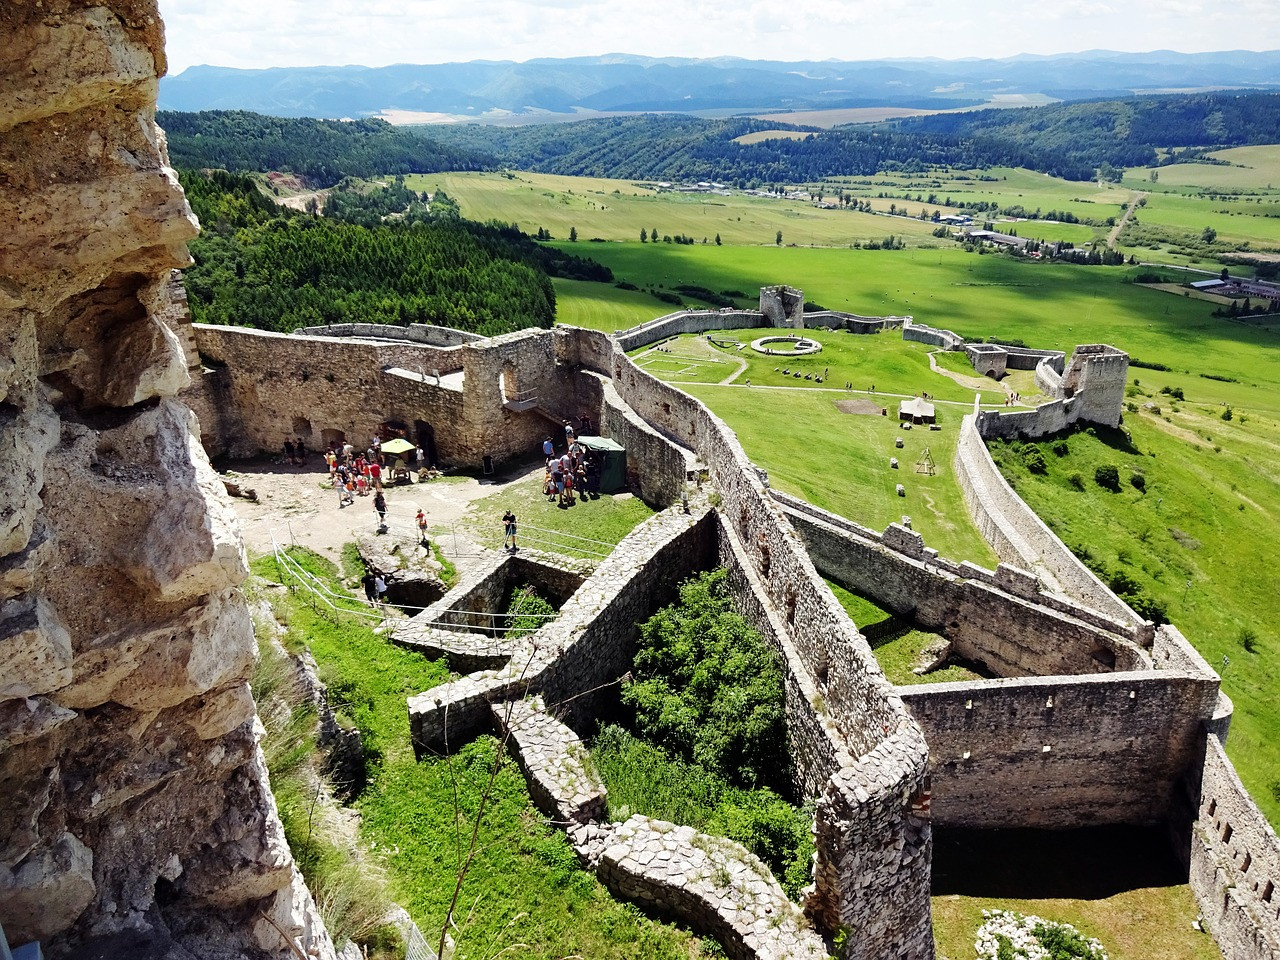 Slávne zasadený na vrchole kopca Spišský hrad ponúka jedinečný pohľad cez nekonečné údolia východného Slovenska. To je prvá vec, prečo Spišský hrad stojí za výlet.
Okrem toho slúži ako pozoruhodné memento turbulentnej minulosti krajiny a je tiež jedným z najväčších hradov v Európe. Napriek tomu, že bol v roku 1780 zničený pri požiari, návštevníci sa môžu vydať po stopách ruín hradu, ktoré sú chránené UNESCO, v blízkosti mesta Spišské Podhradie.
Hneď po návšteve môžu návštevníci navštíviť múzeum, ktoré podrobne opisuje históriu hradu a užiť si úchvatné výhľady z jeho hradieb.
•	Tip: Na okraji Spišského Podhradia leží jedinečné cirkevné mesto Spišská Kapitula, ktoré je tiež patrí pod ochranu UNESCO. Skutočným klenotom tohto komplexu je katedrála sv. Martina, známa ako jeden z najkrajších románskych kostolov na Slovensku.